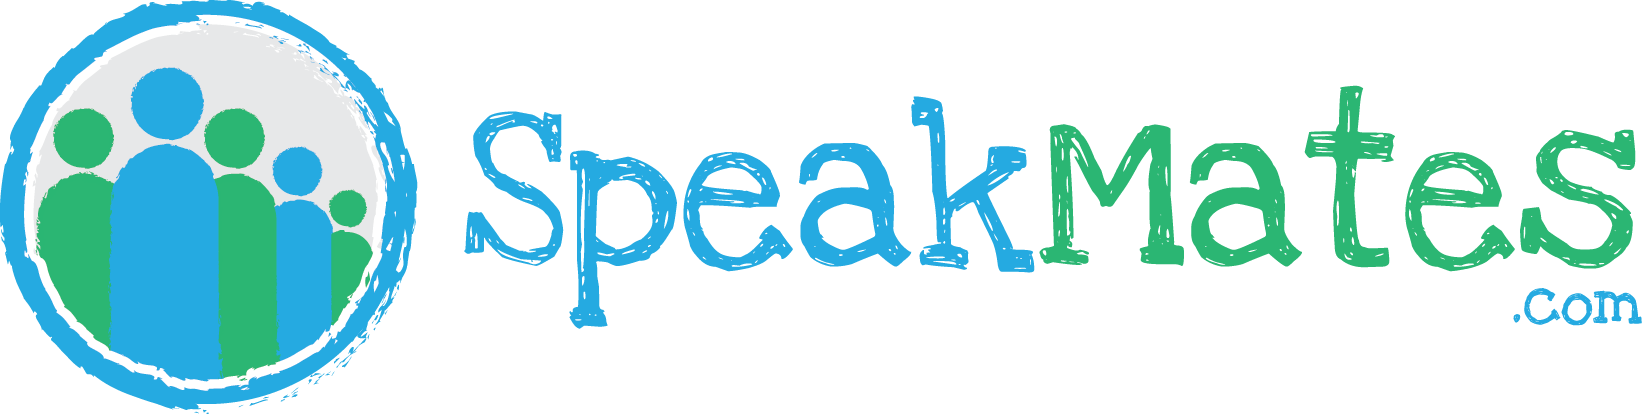 Speakmates.com logo